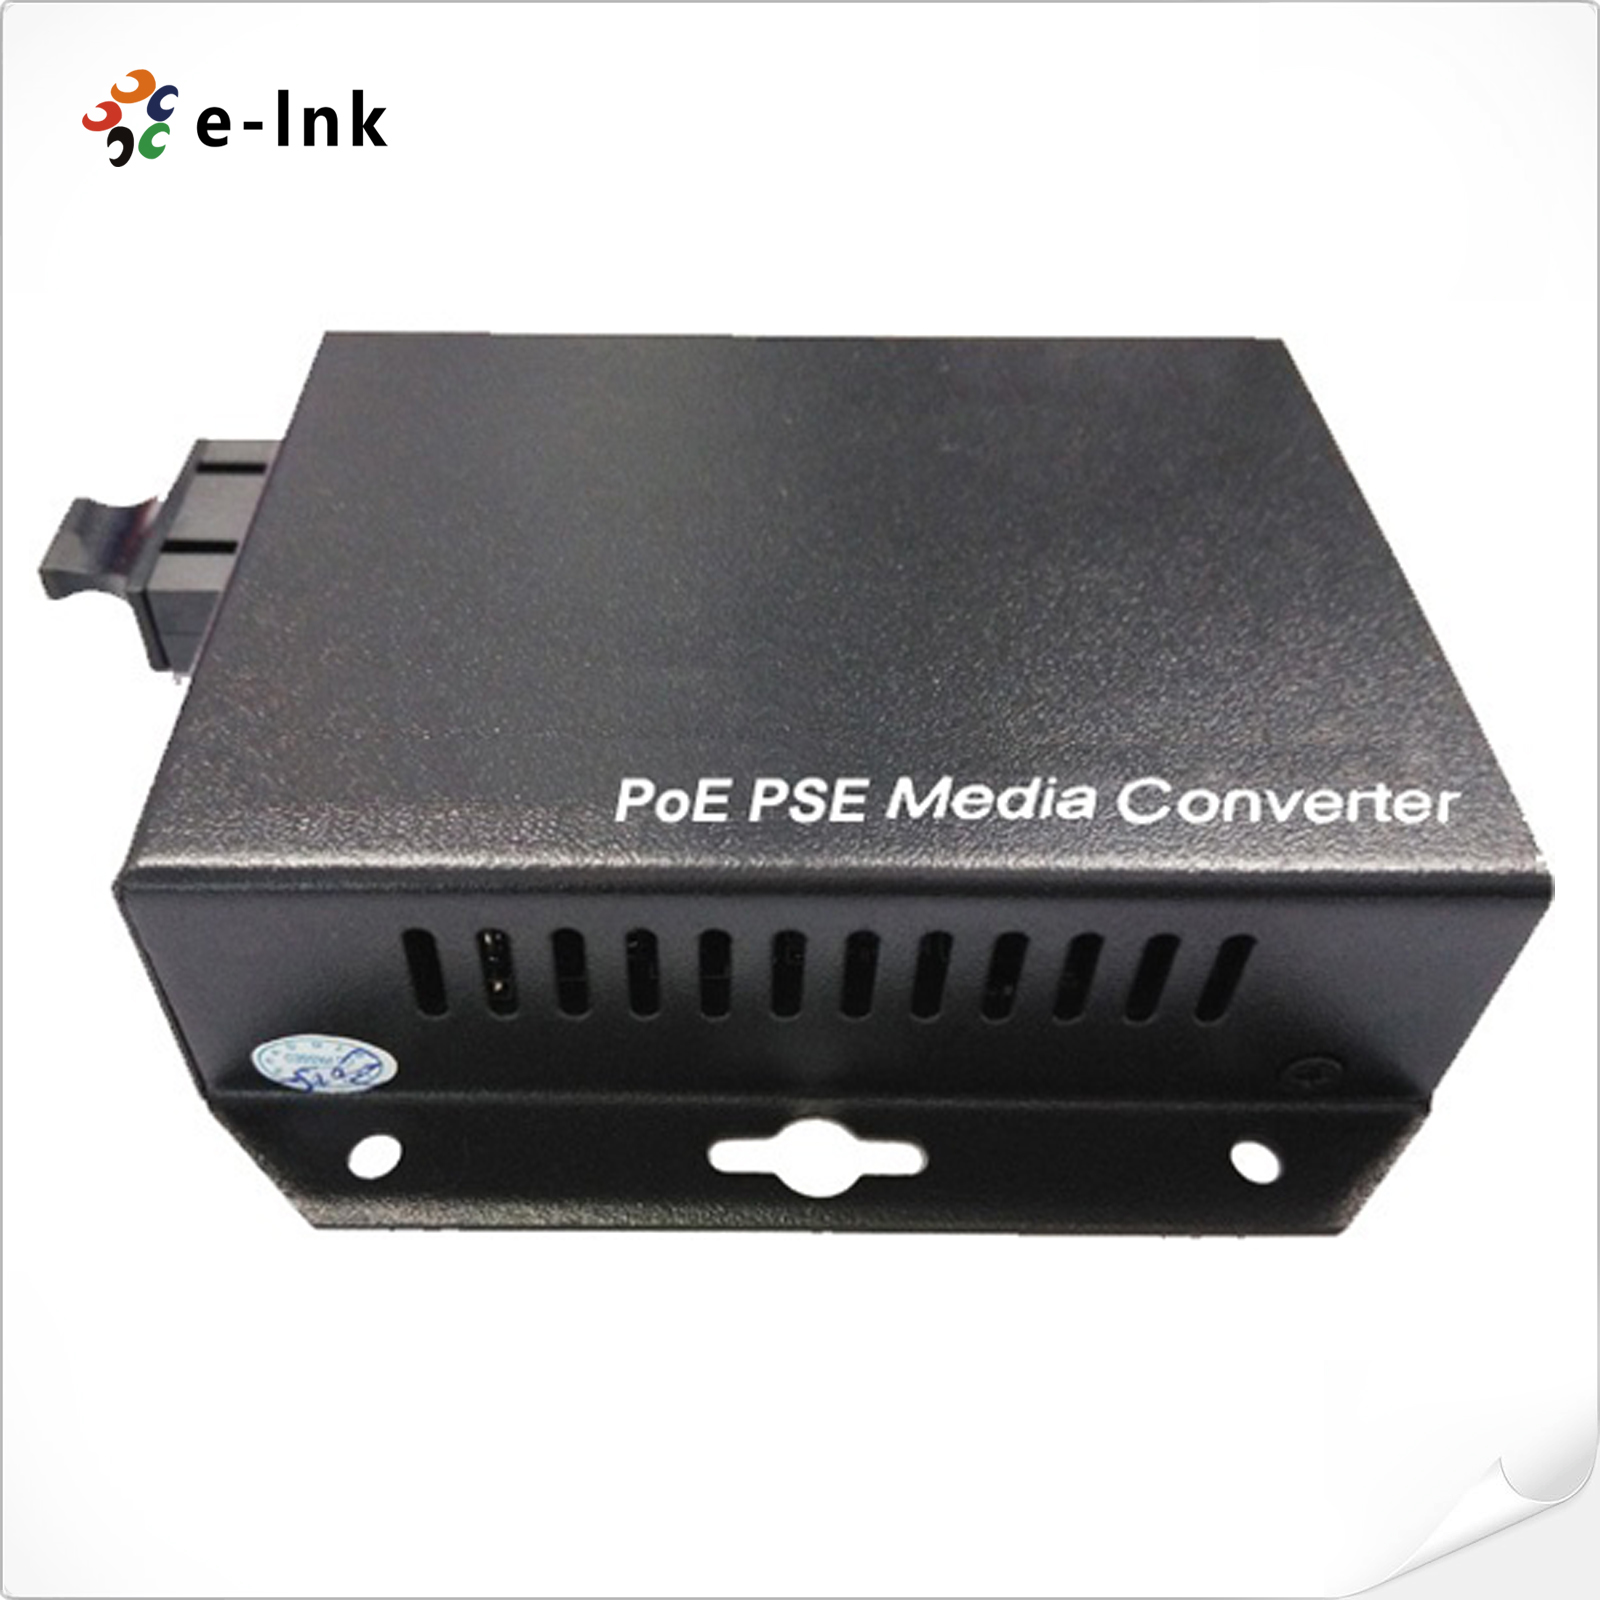 Wall-Mounted 10/100/1000Mbps Gigabit PoE-PSE Fiber Media Converter